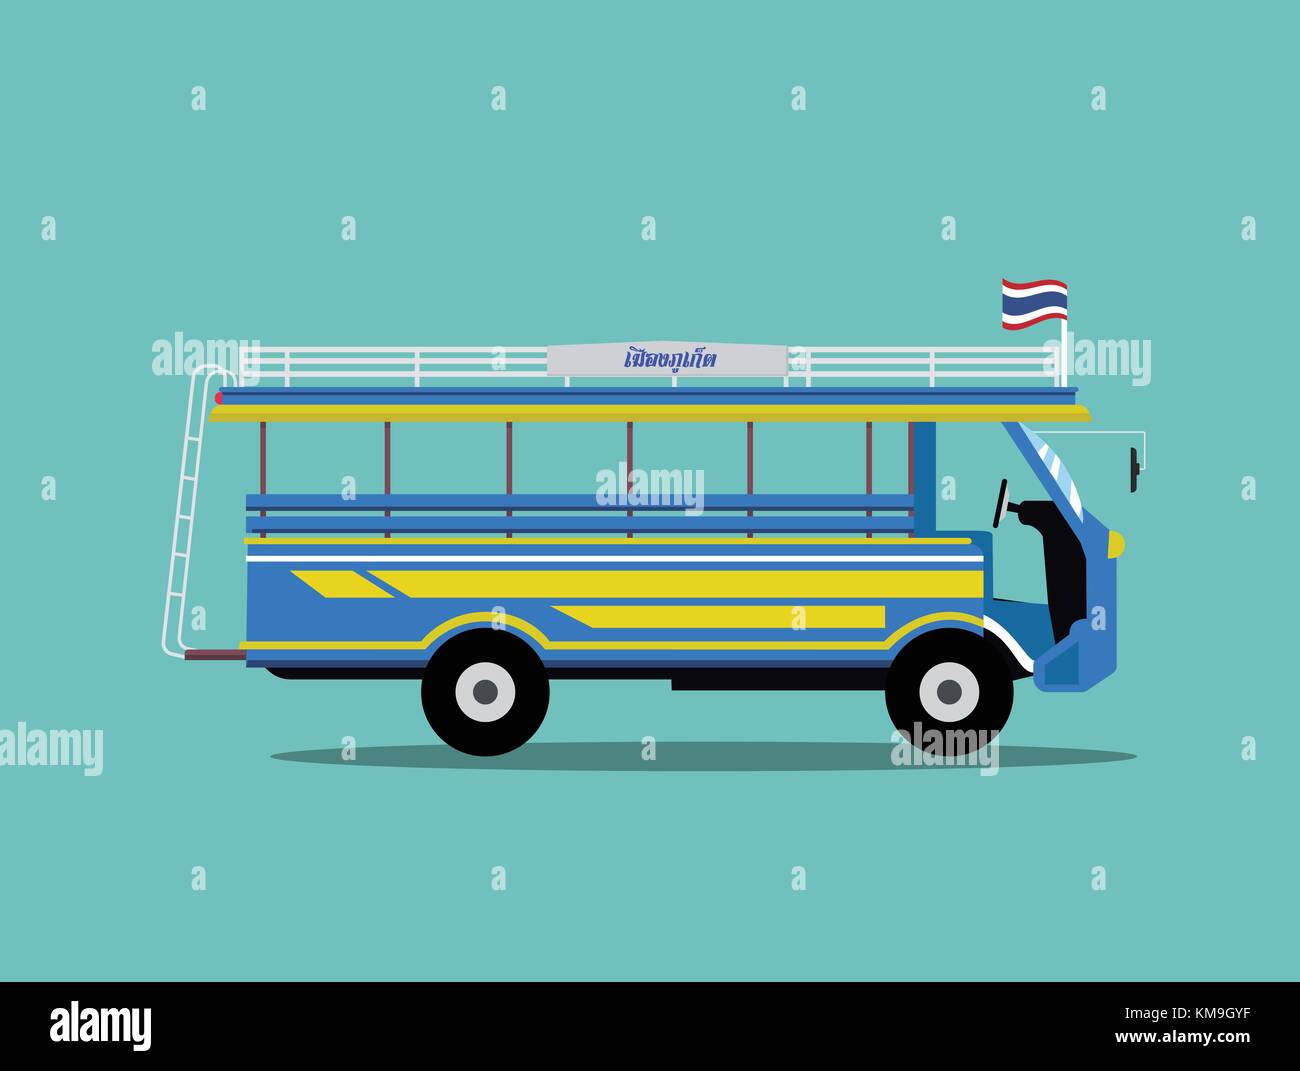 La Thaïlande conception minibus.local voiture à Phuket Thaïlande.bus classique vector illustration.texte dans l'image le sens de 'phuket est dans le sud de la province de Thaïlande Illustration de Vecteur